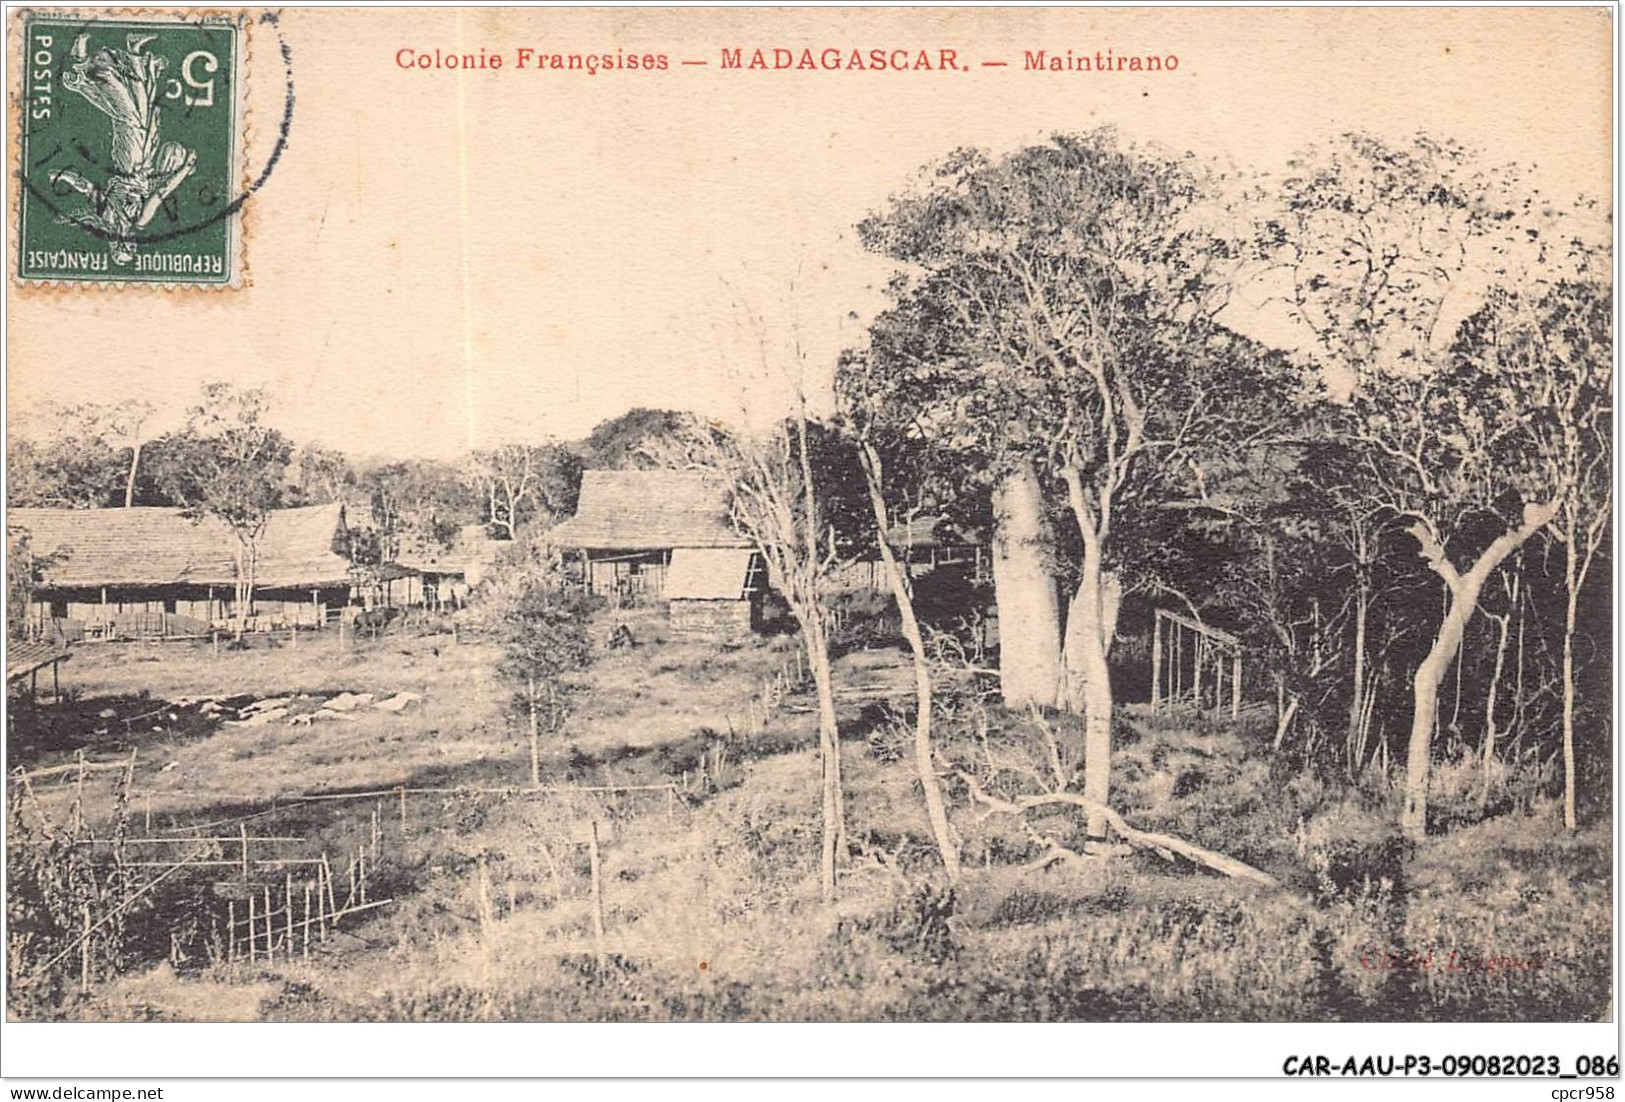 CAR-AAUP3-0190 - MADAGASCAR - Colonies Francaises - Maintirano - Madagaskar